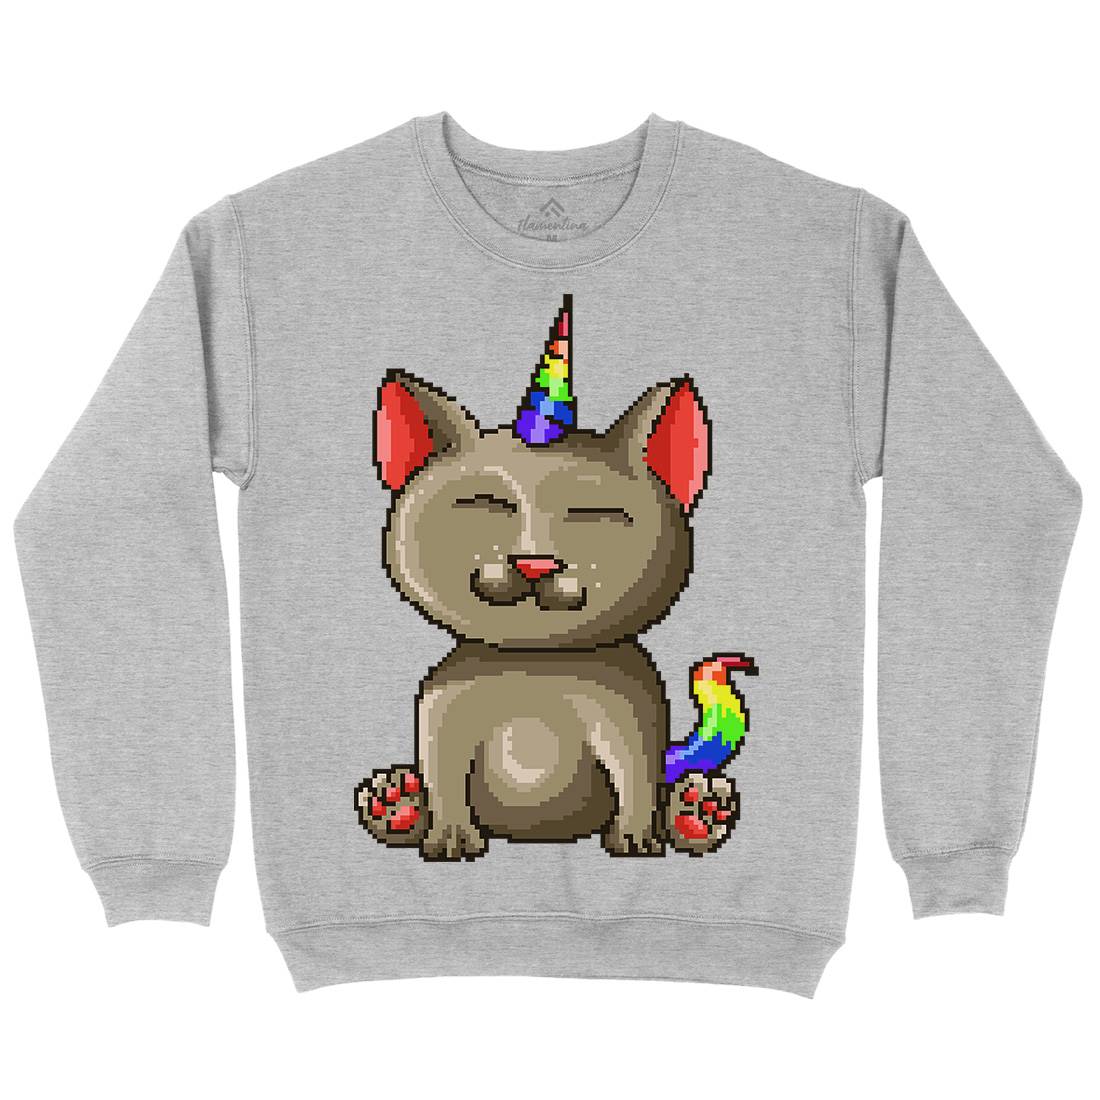 Kitty Unicorn Kids Crew Neck Sweatshirt Animals B922